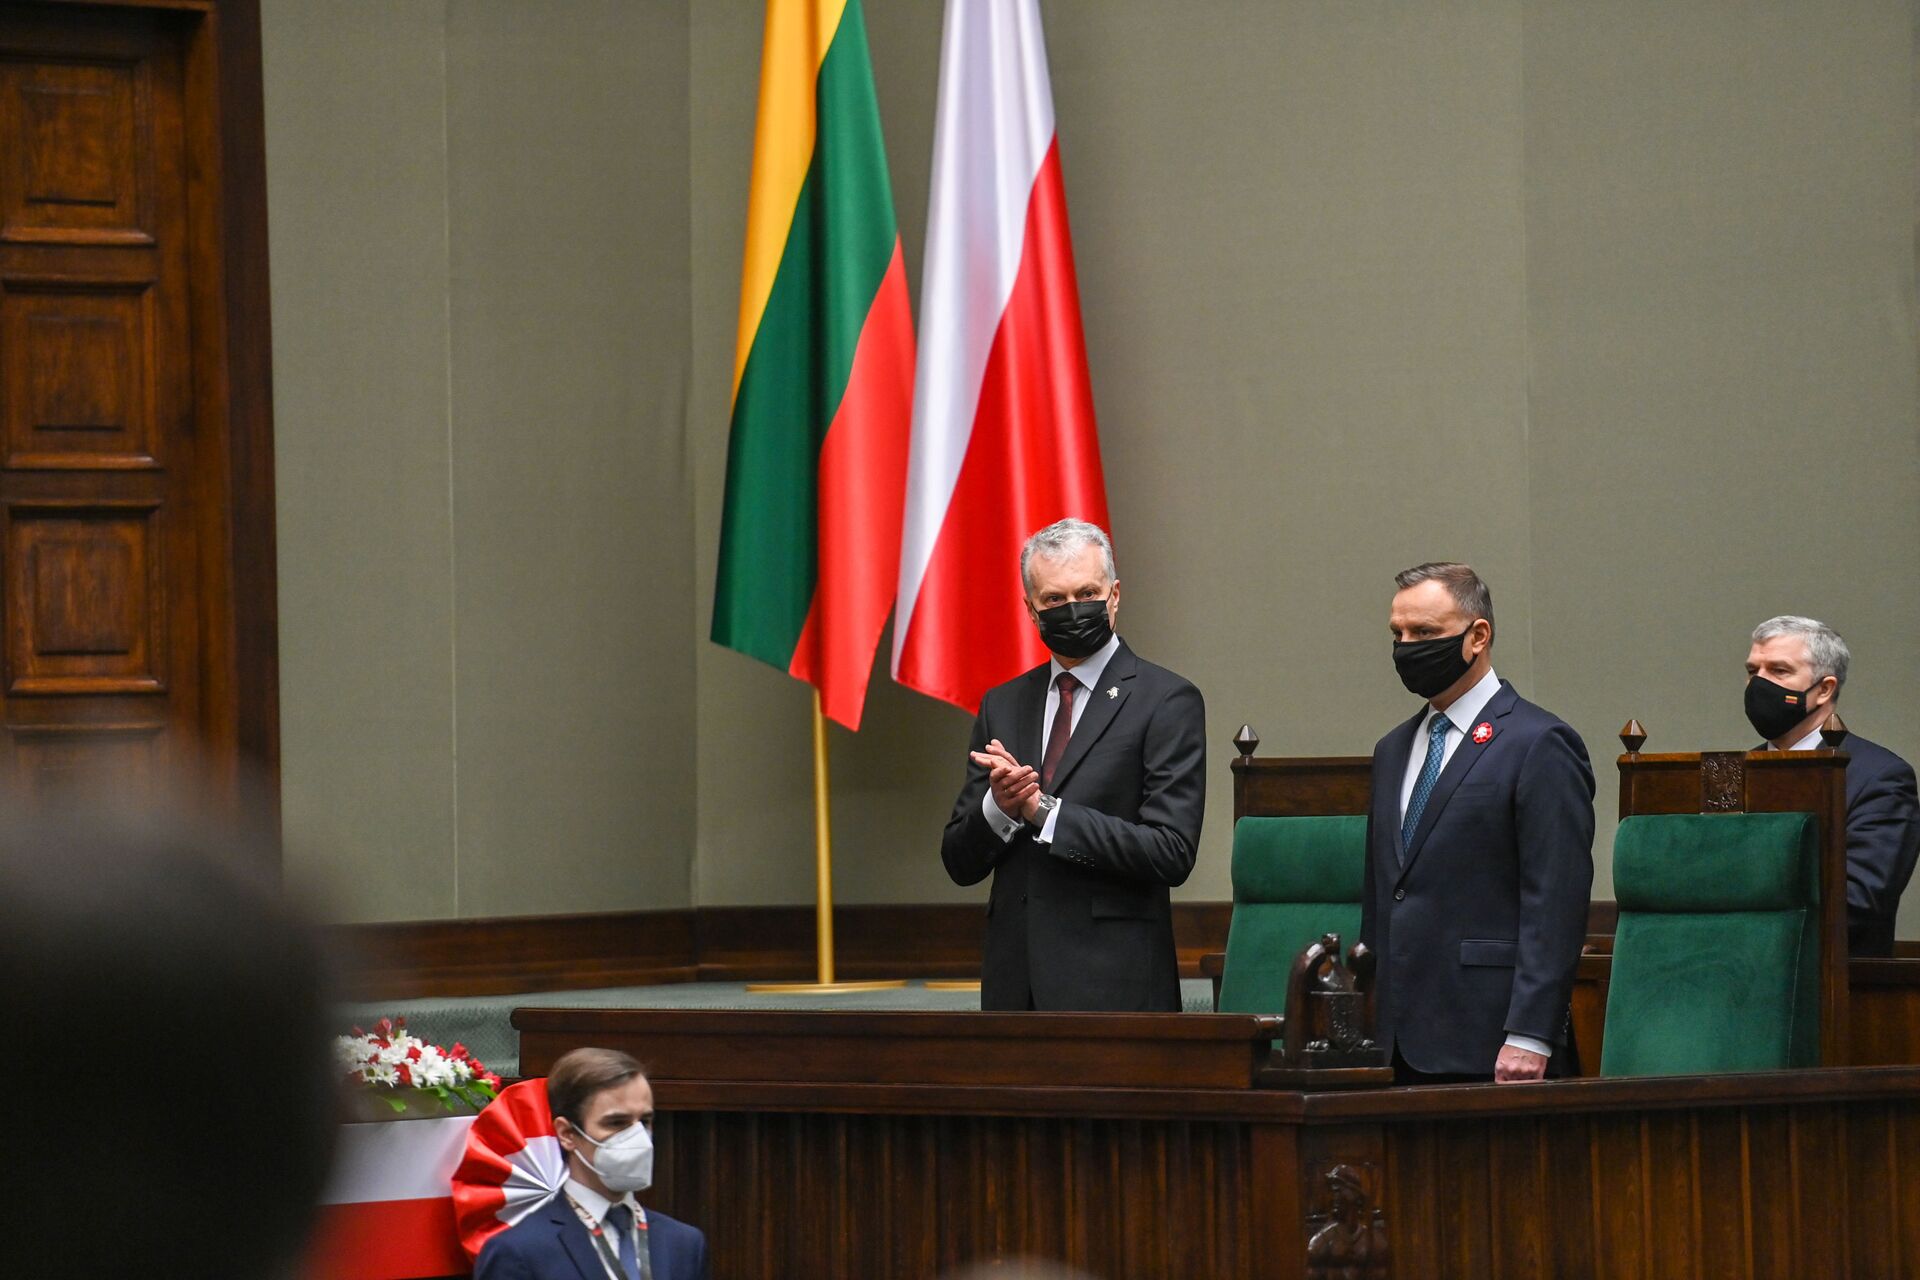 Президент Литвы Гитанас Науседа выступил в Польше на церемонии празднования годовщины Конституции, 3 мая 2021 года - Sputnik Lietuva, 1920, 12.05.2021